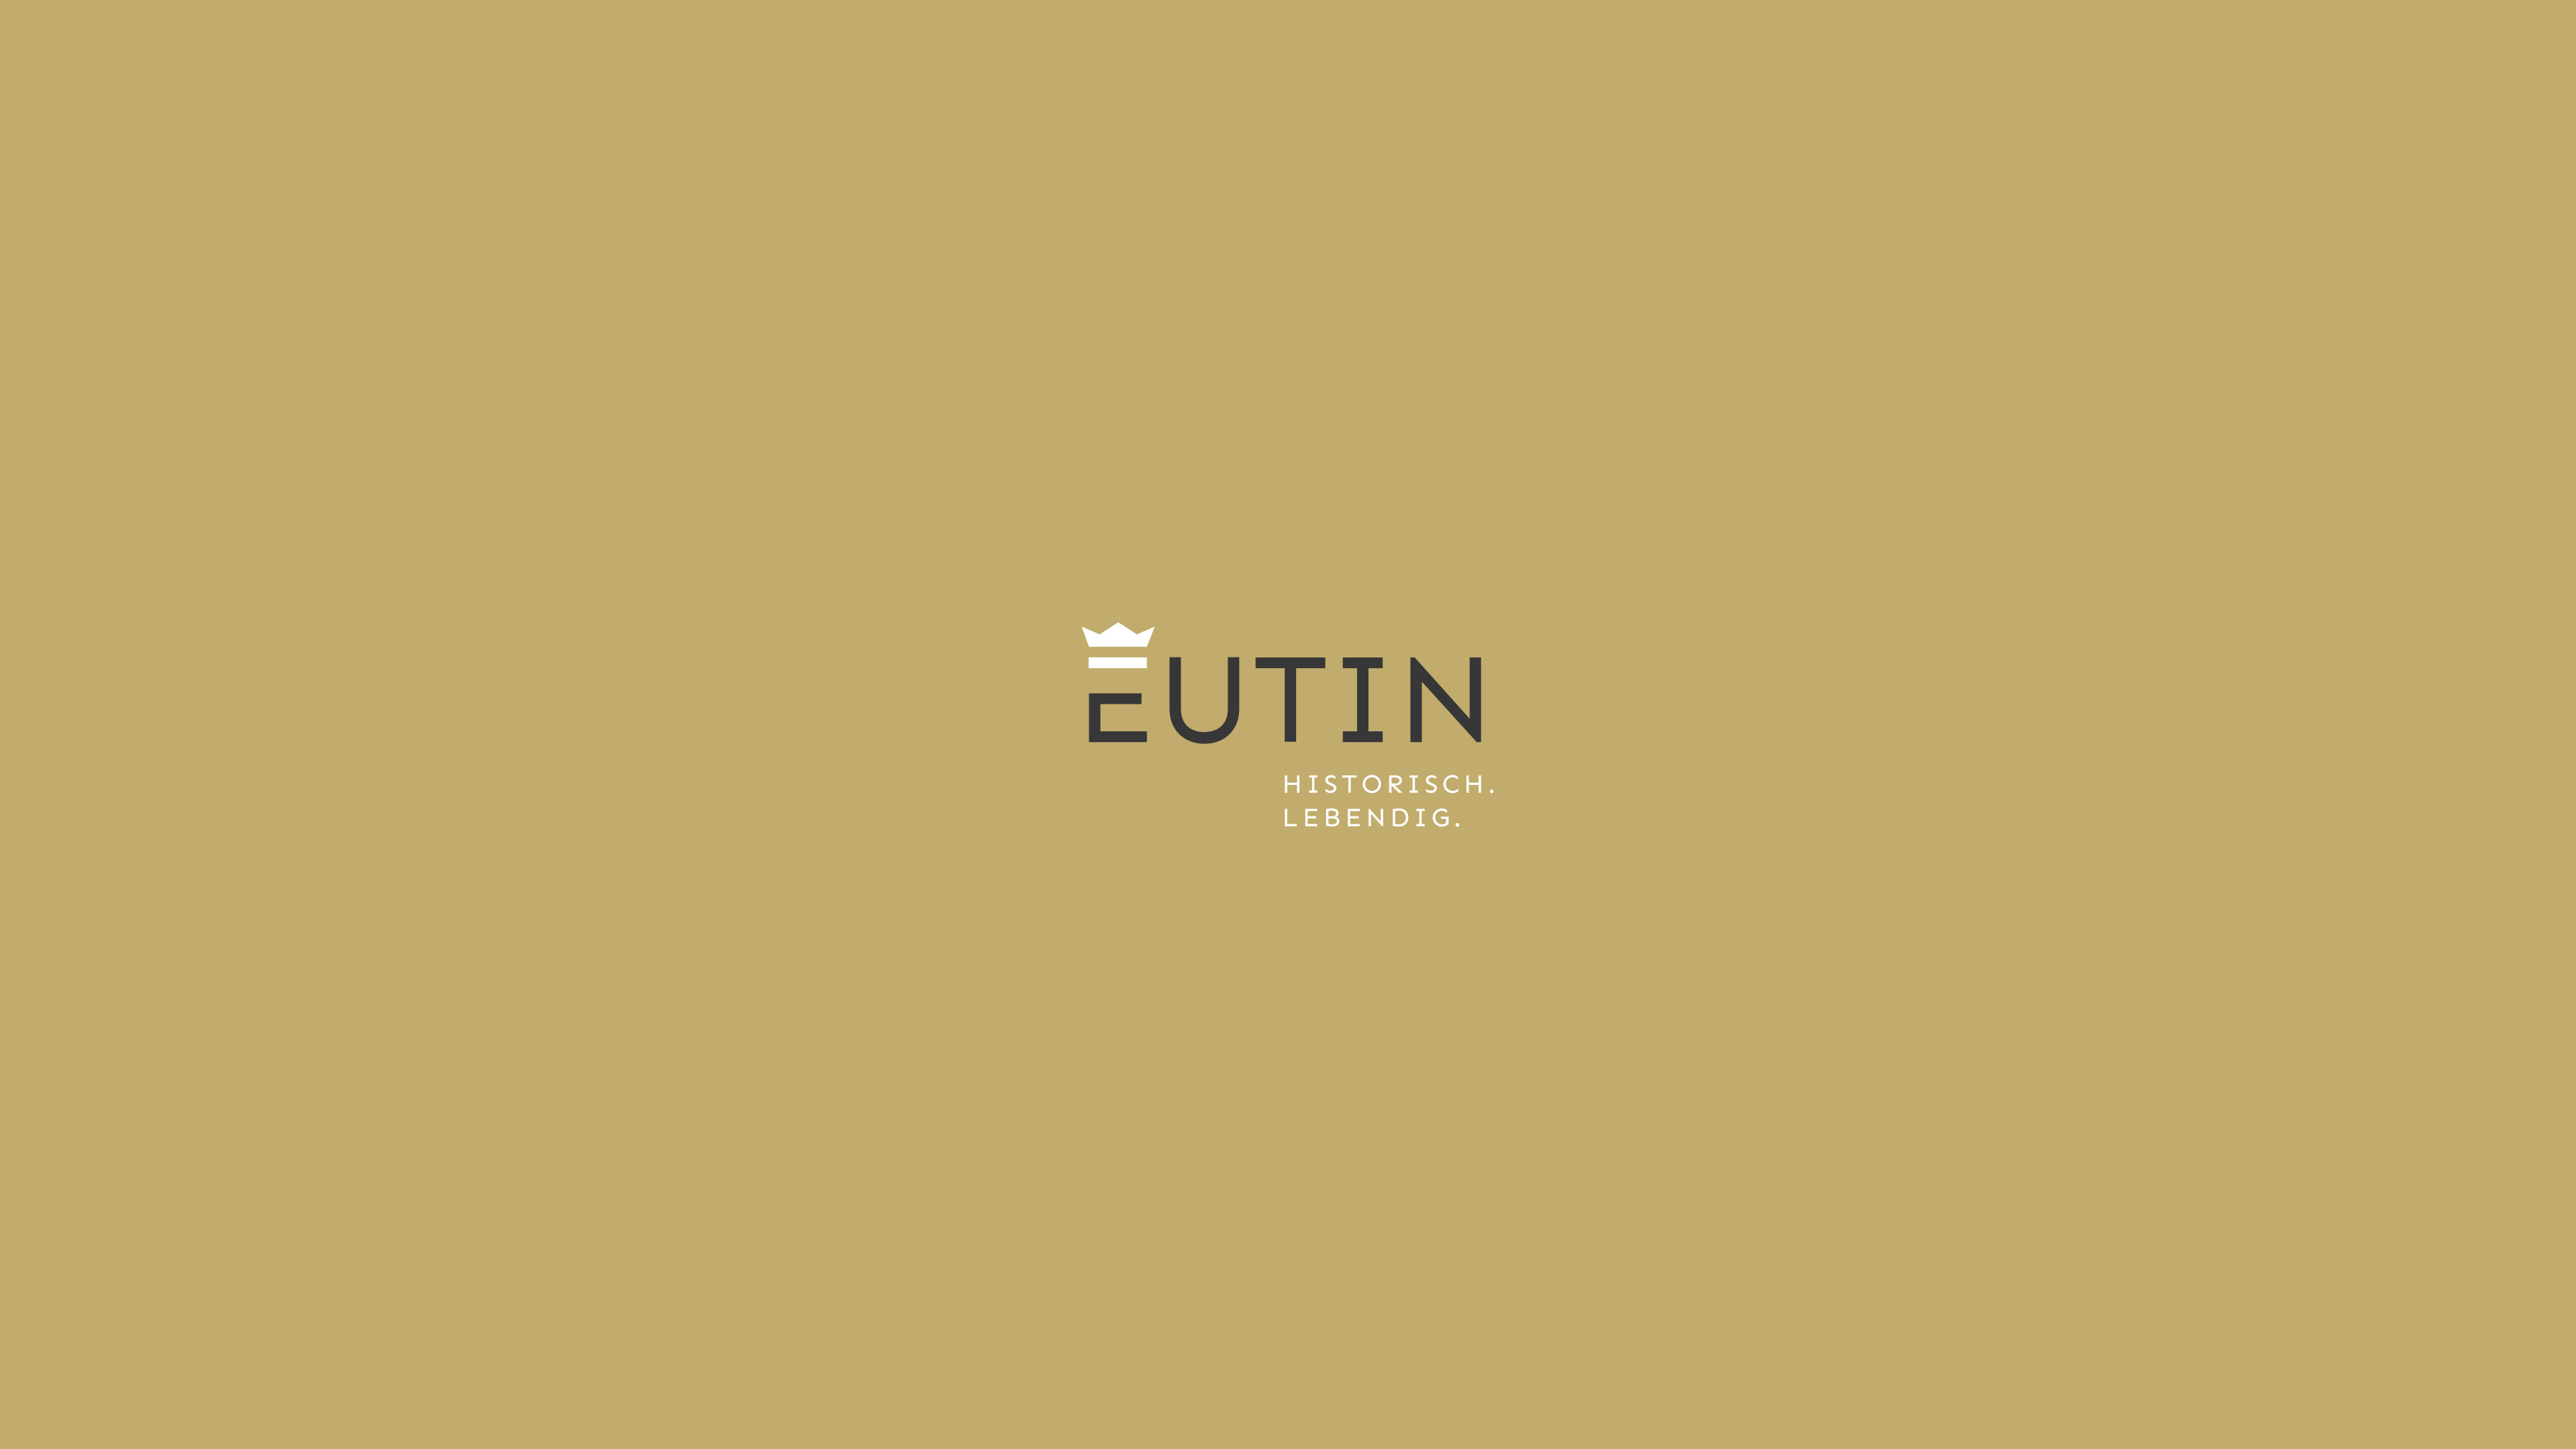 Goldener Hintergrund und Eutin-Logo mit Text "Historisch. Lebendig"